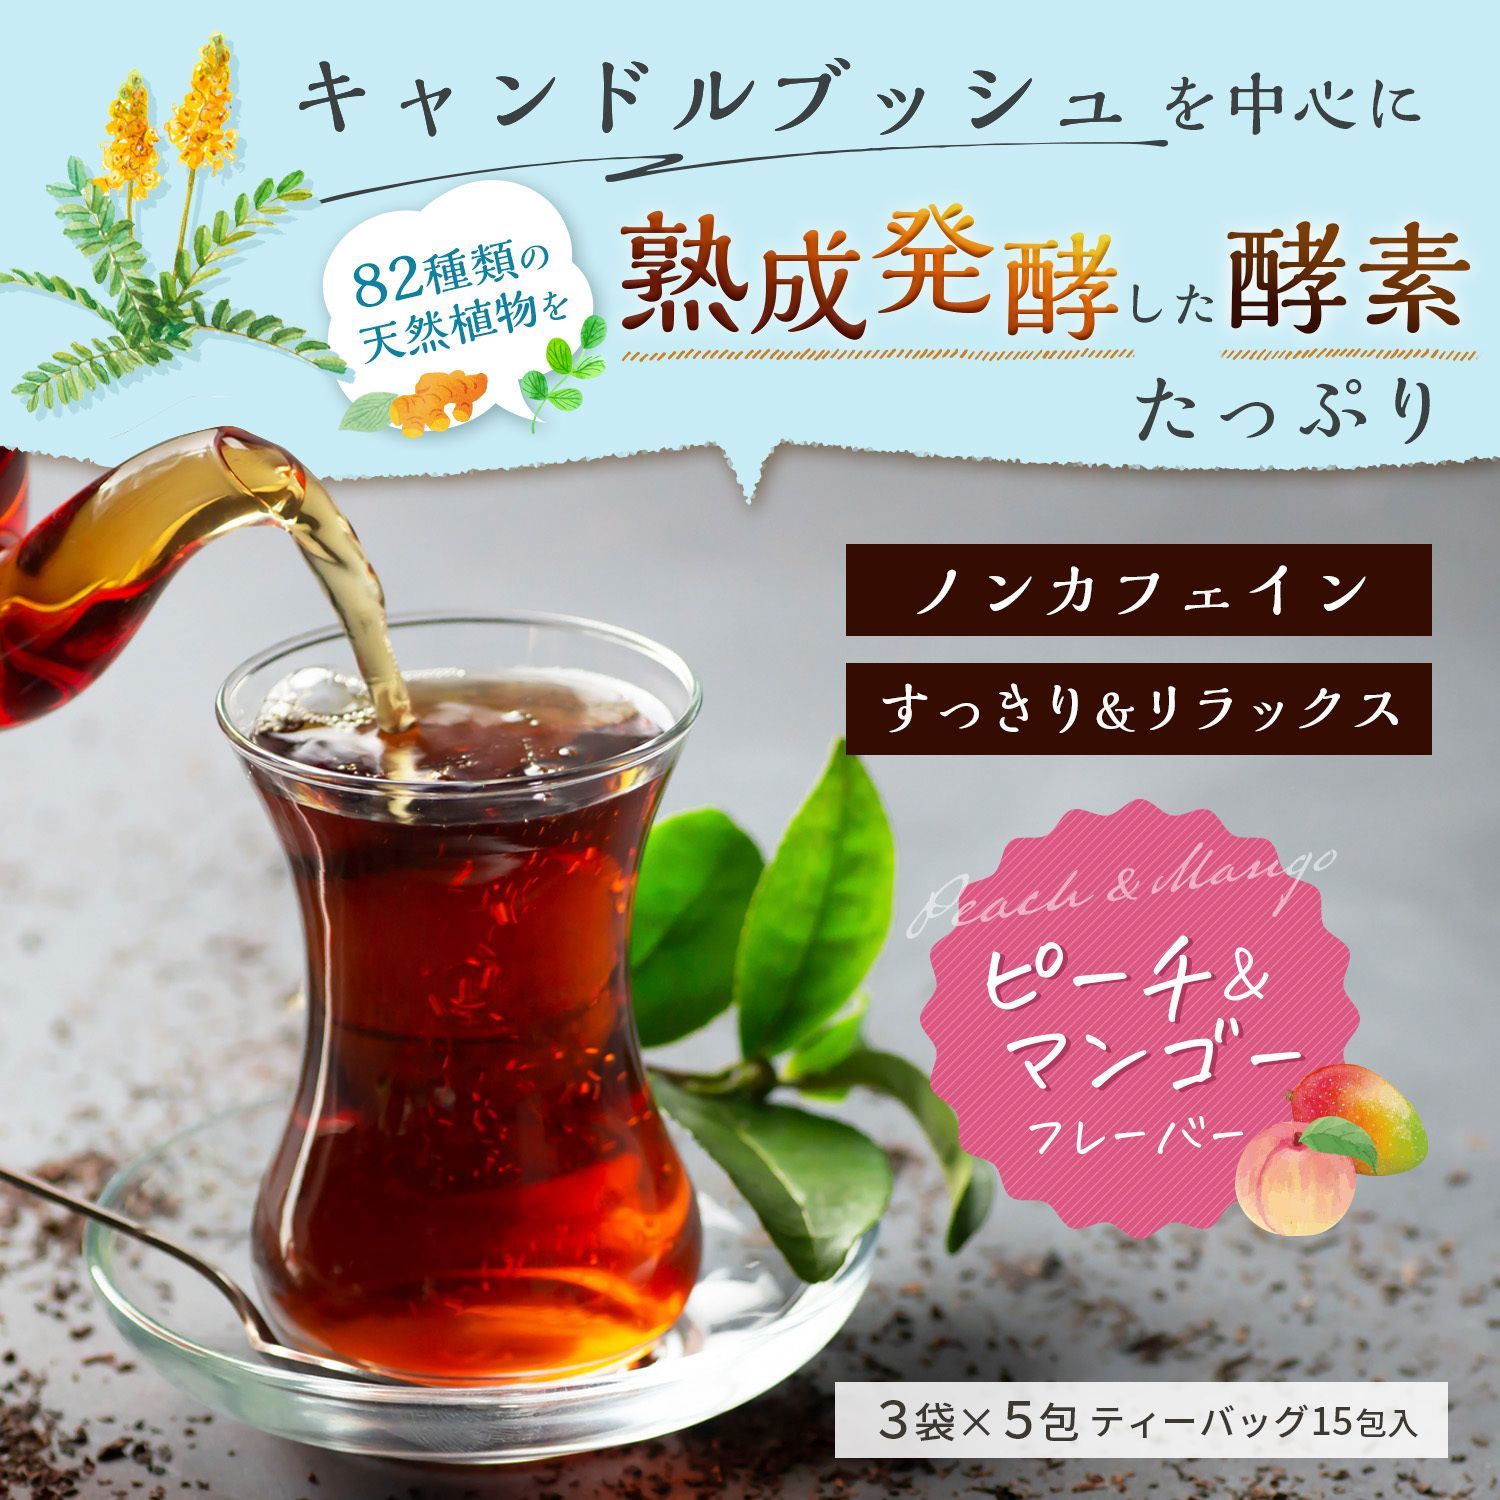 ブレンドティー 「すっきりらっく茶」 ピーチマンゴー フレーバー ノンカフェイン-1